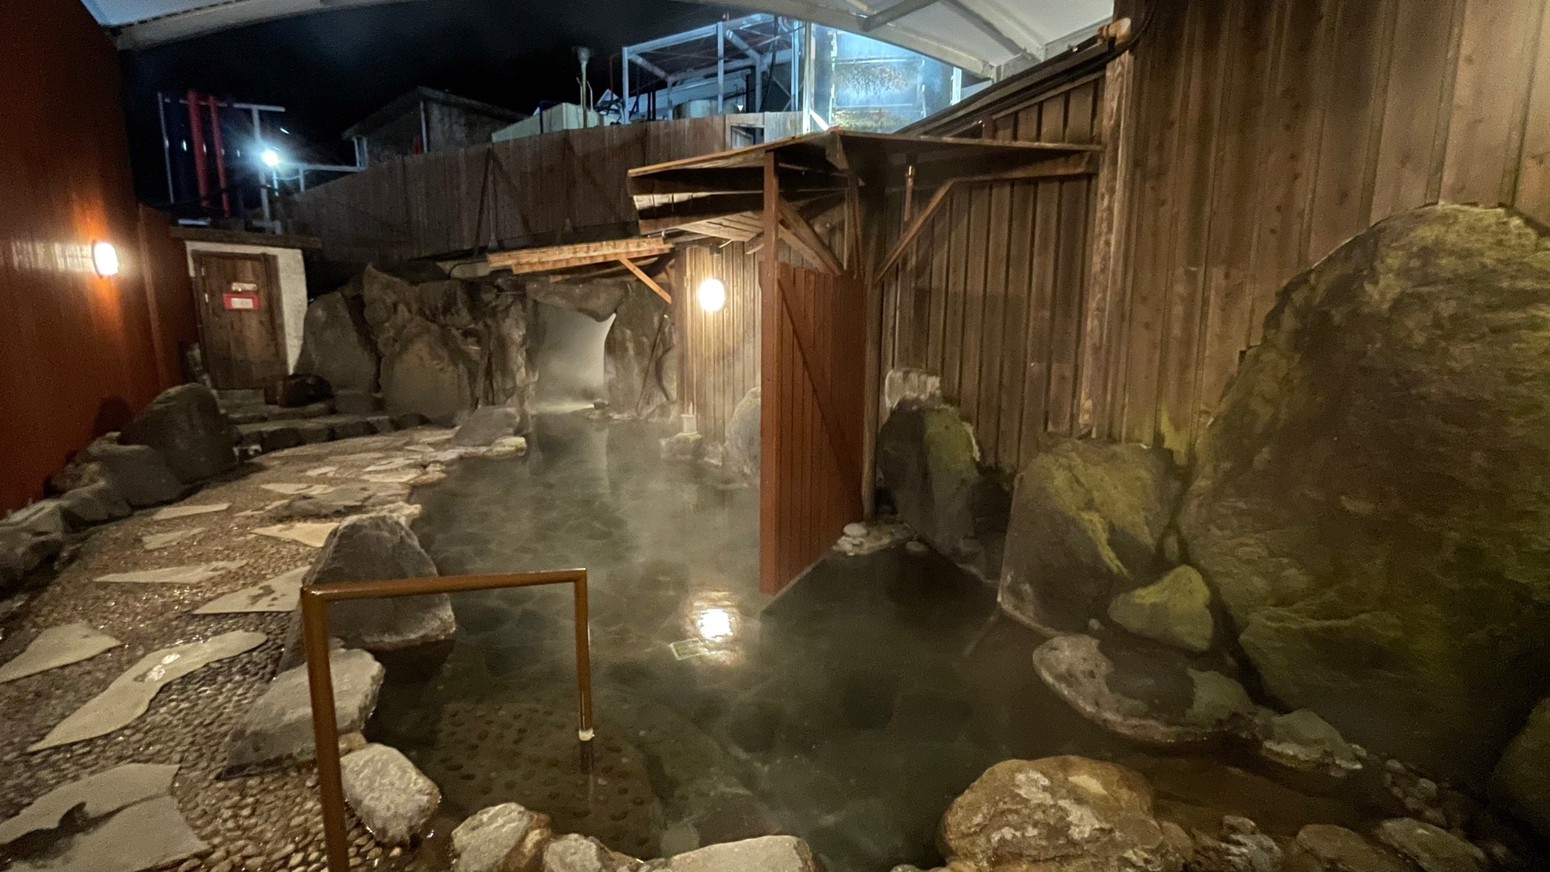 Ph9.3のアルカリ性で保湿成分のメタケイ酸を多く含む温泉を楽しめるい岩風呂大浴場です。